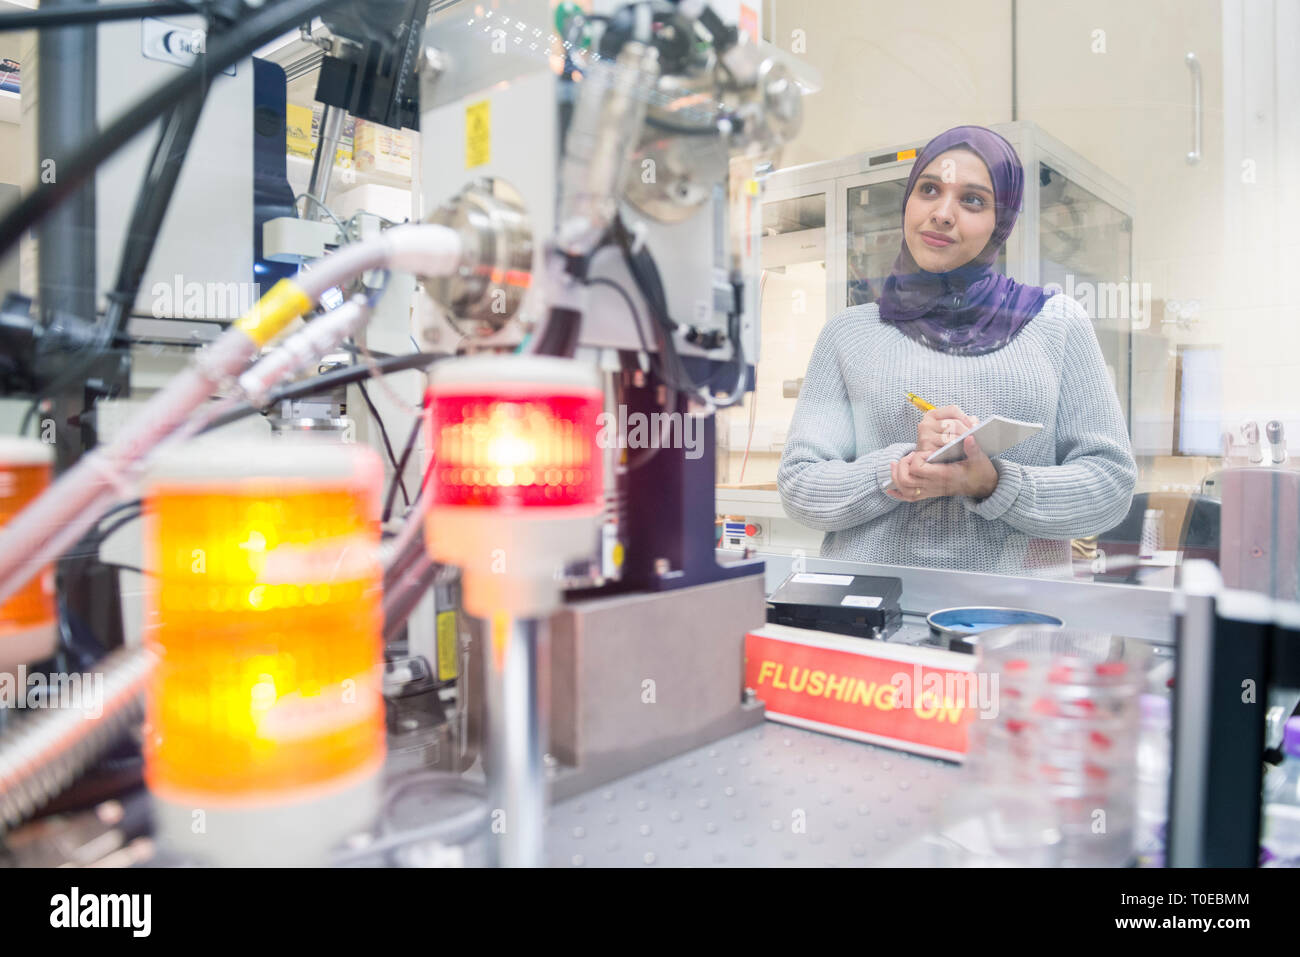 Une femme musulmane utilise le matériel scientifique dans un laboratoire de recherche, à l'Université de Sussex, tout en portant un hijab traditionnel. Banque D'Images